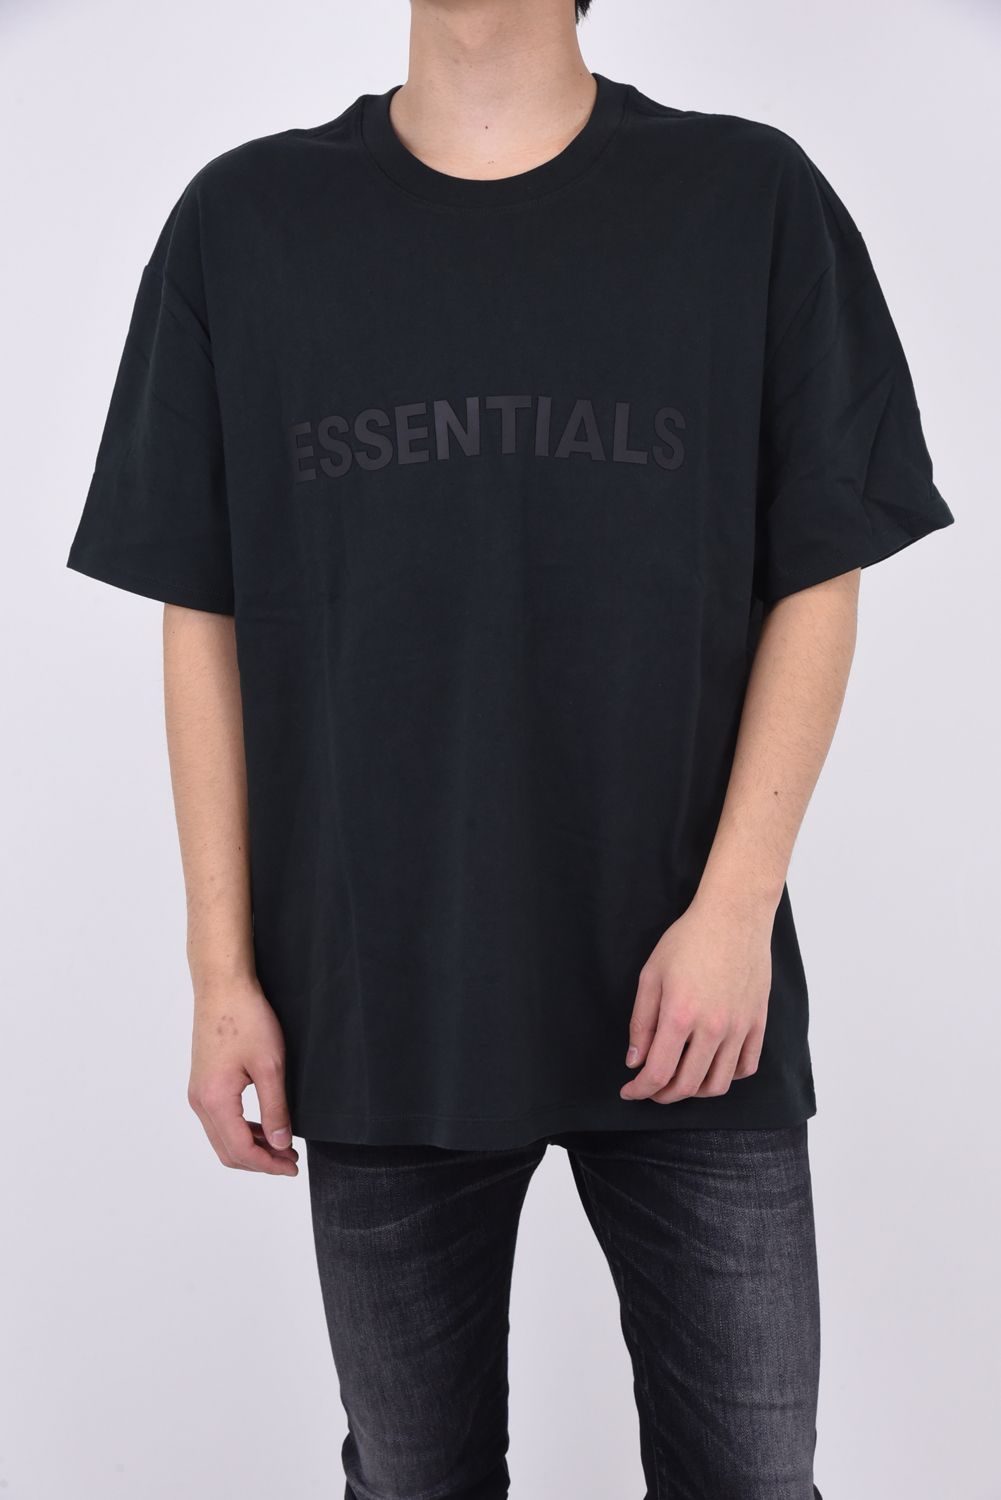 新作FOG Essentials フロントロゴ Tシャツ TOBACCO S